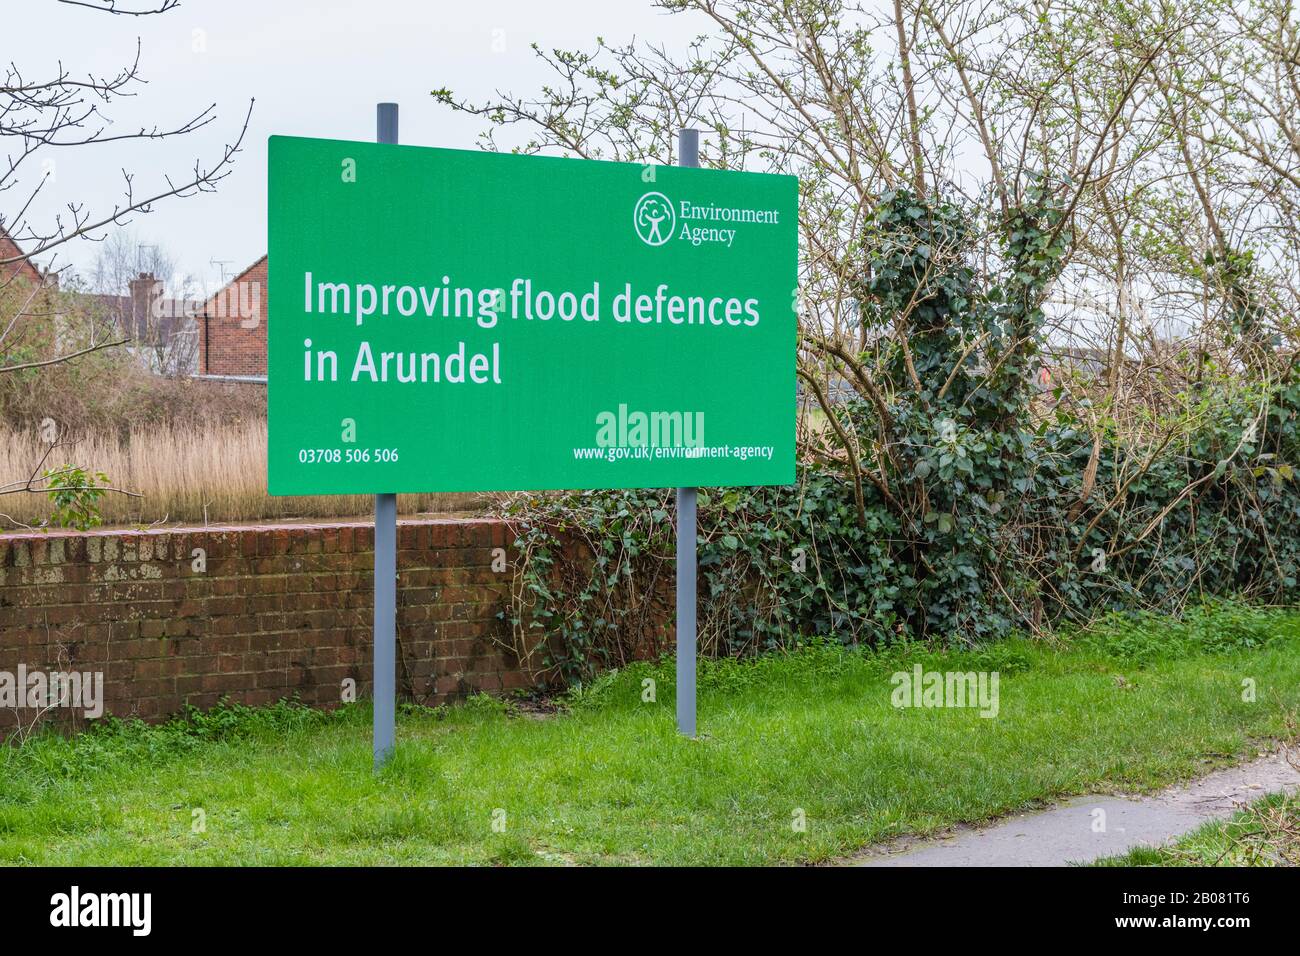 La Agencia del Medio Ambiente firma para Mejorar las defensas contra las inundaciones en el río Arun en Arundel, West Sussex, Reino Unido, mientras que se están llevando a cabo obras de sistemas de defensa contra las mareas. Foto de stock